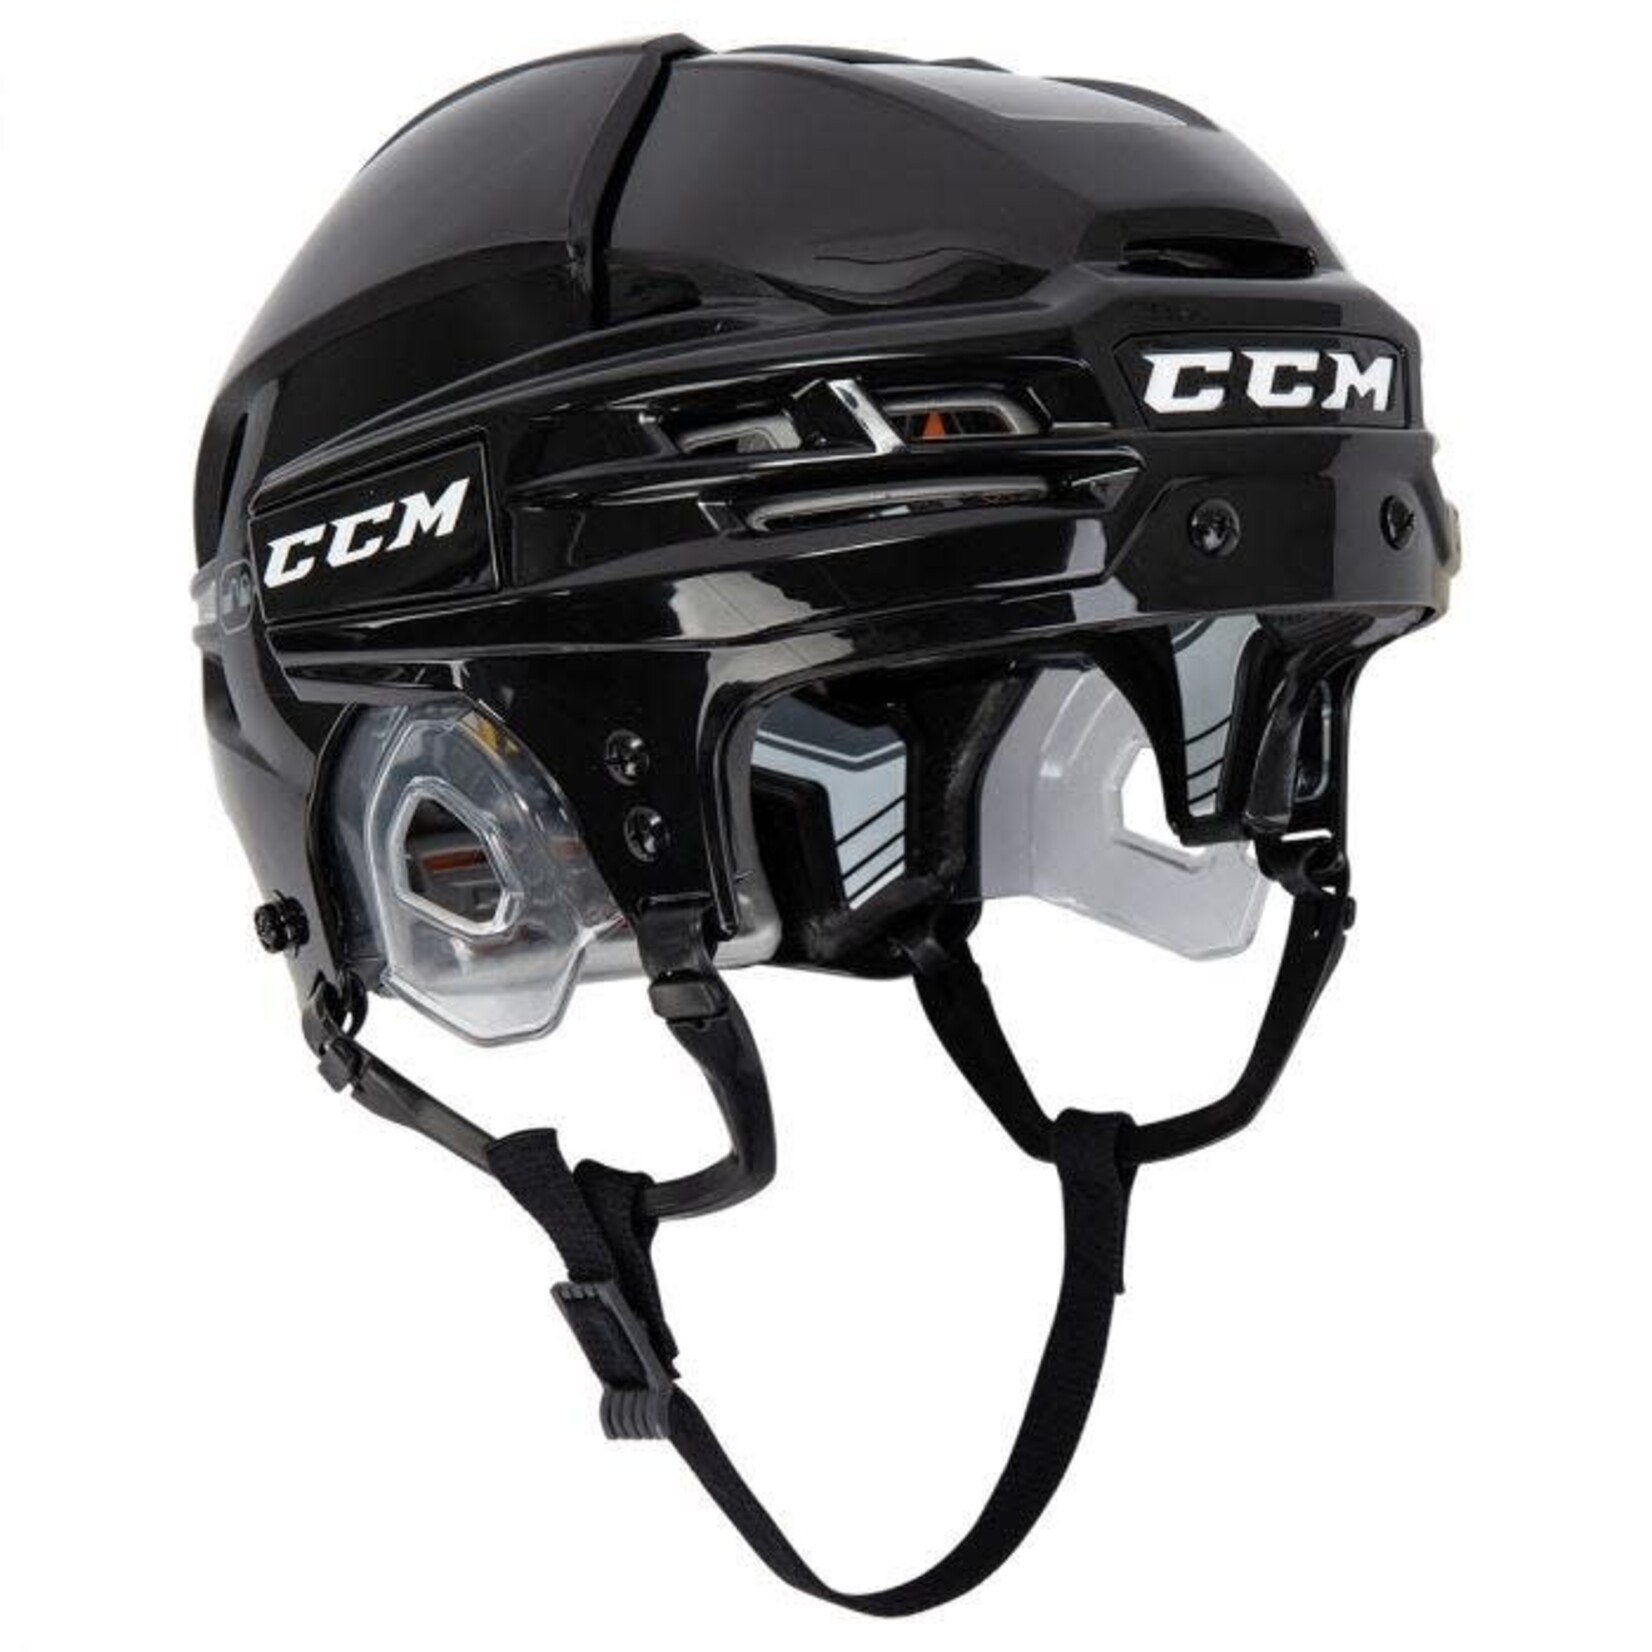 CCM CCM Hockey Helmet, Tacks 910, Senior